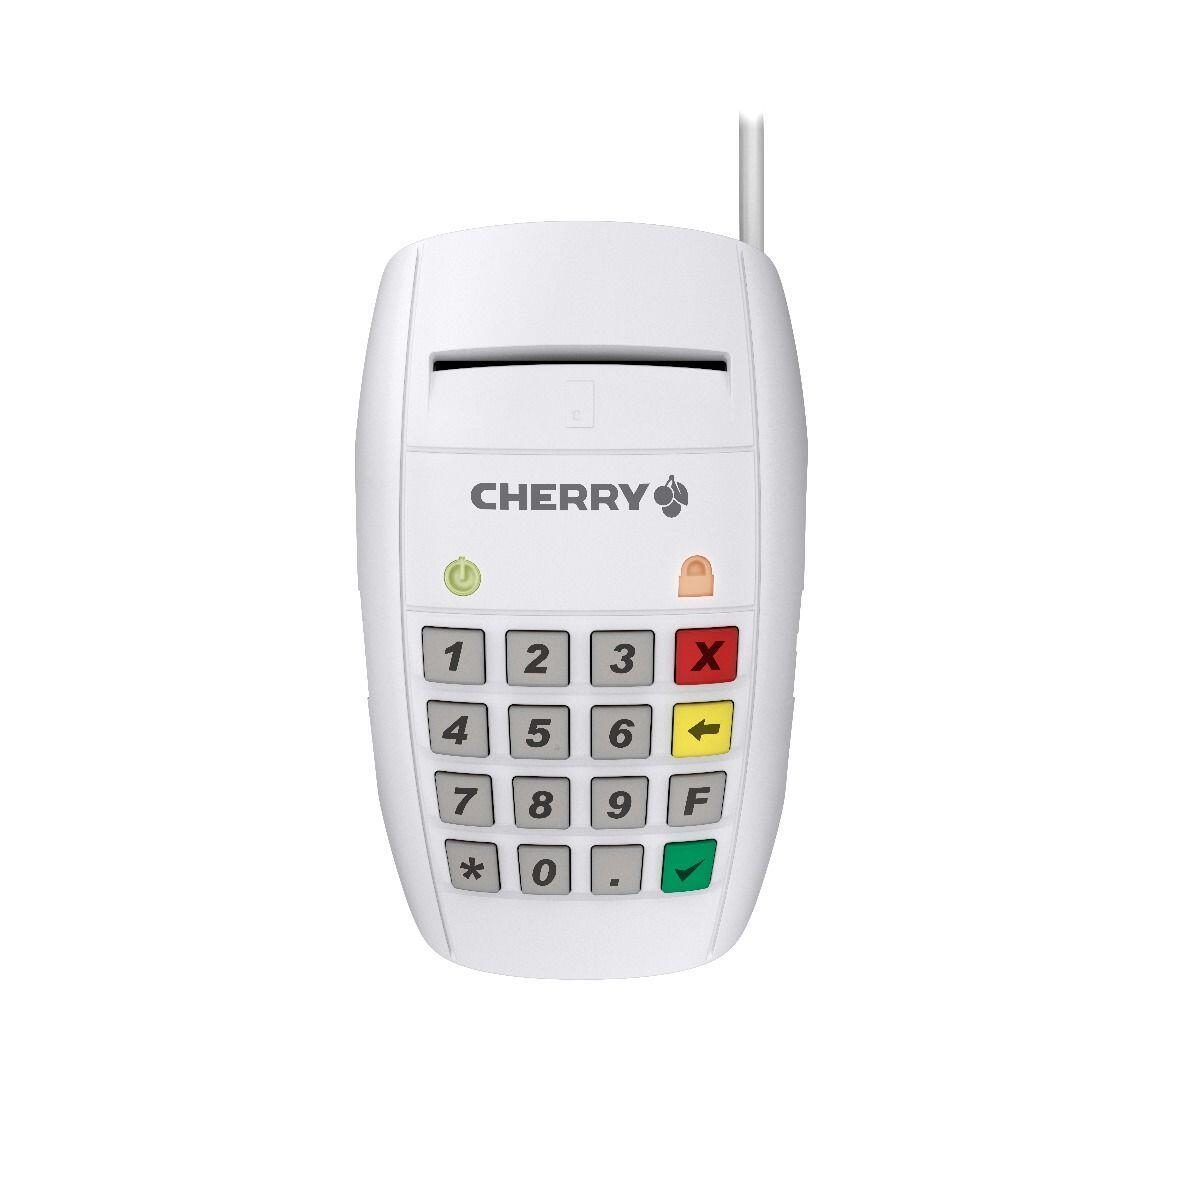 CHERRY Smart Terminal ST-2100 Kartenlesegerät, weiß